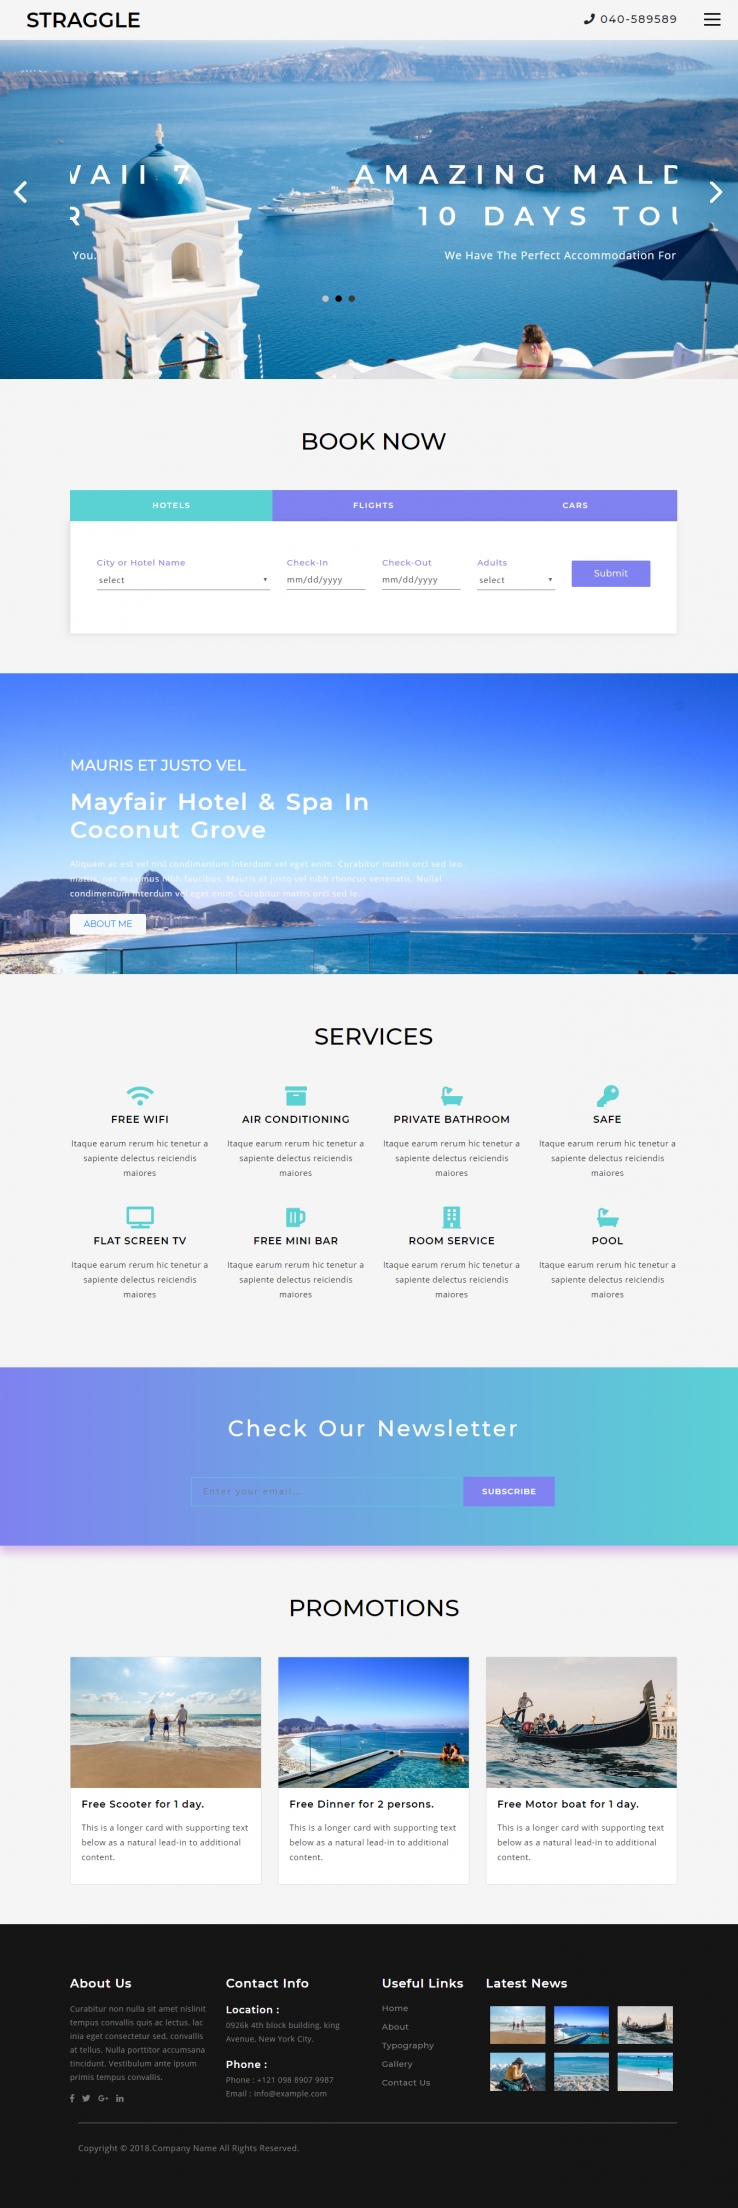 蓝色简洁风格的旅游攻略酒店企业网站源码下载